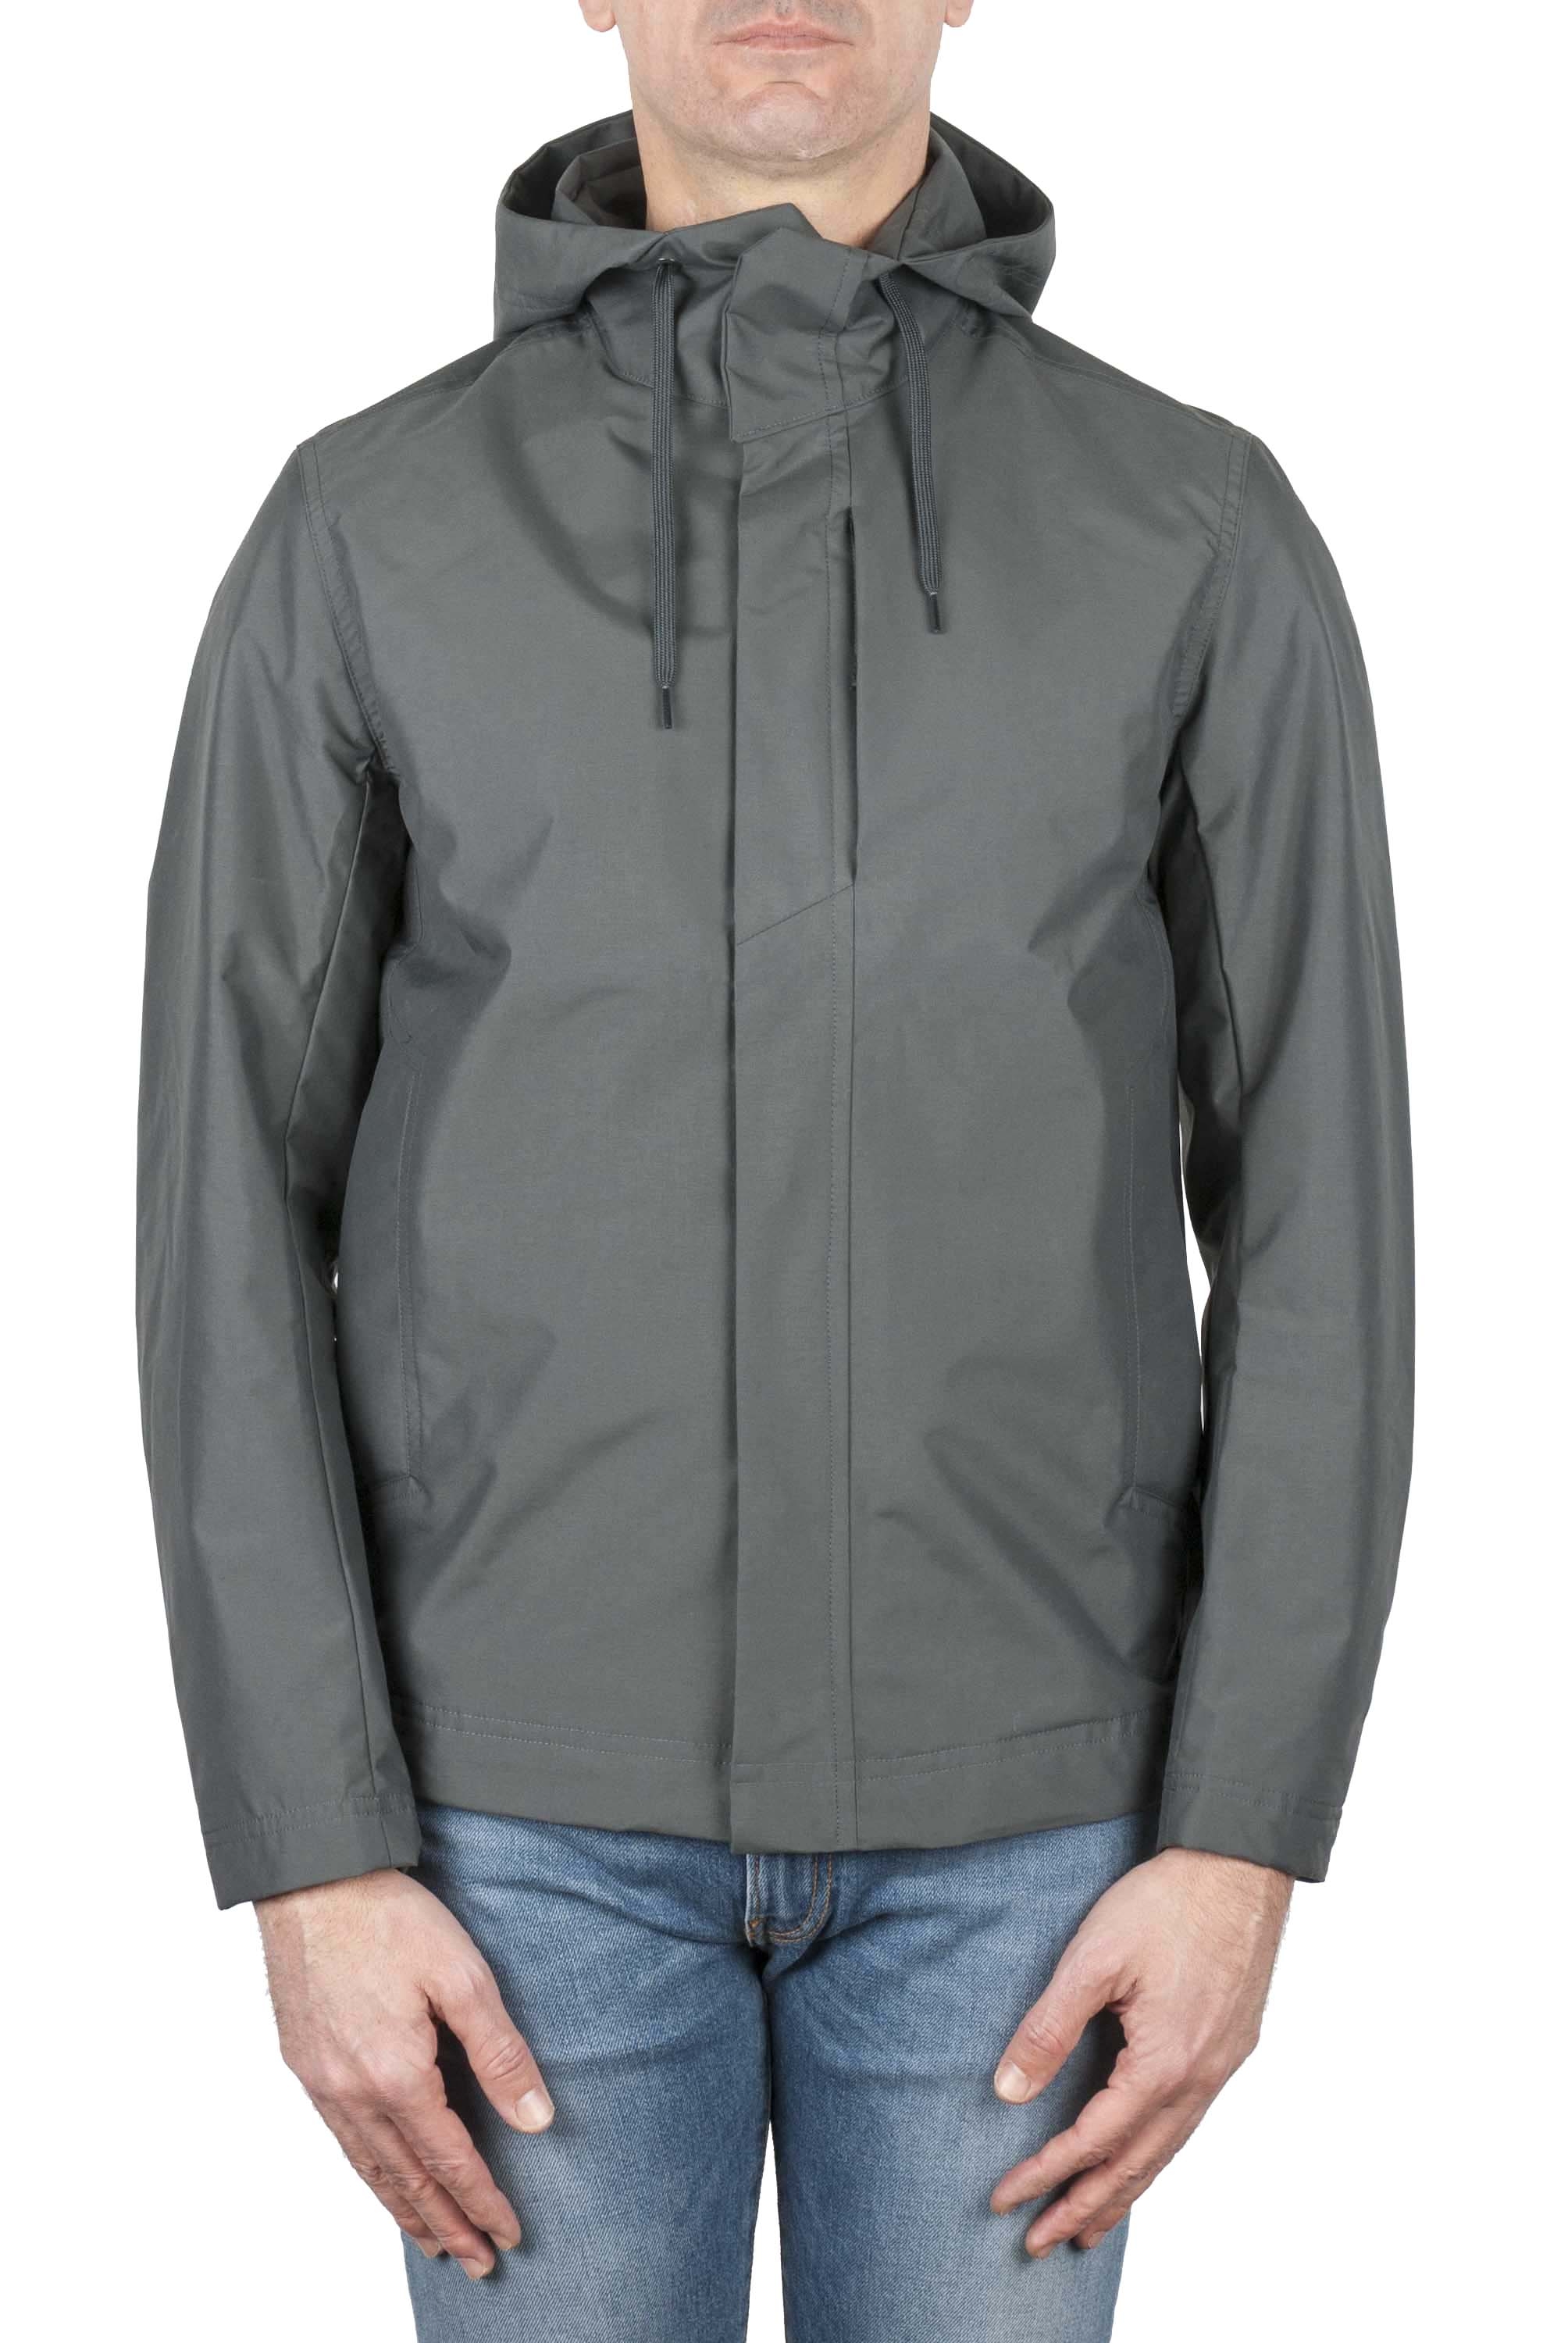 SBU 04517_23AW Technical waterproof hooded windbreaker jacket grey 01